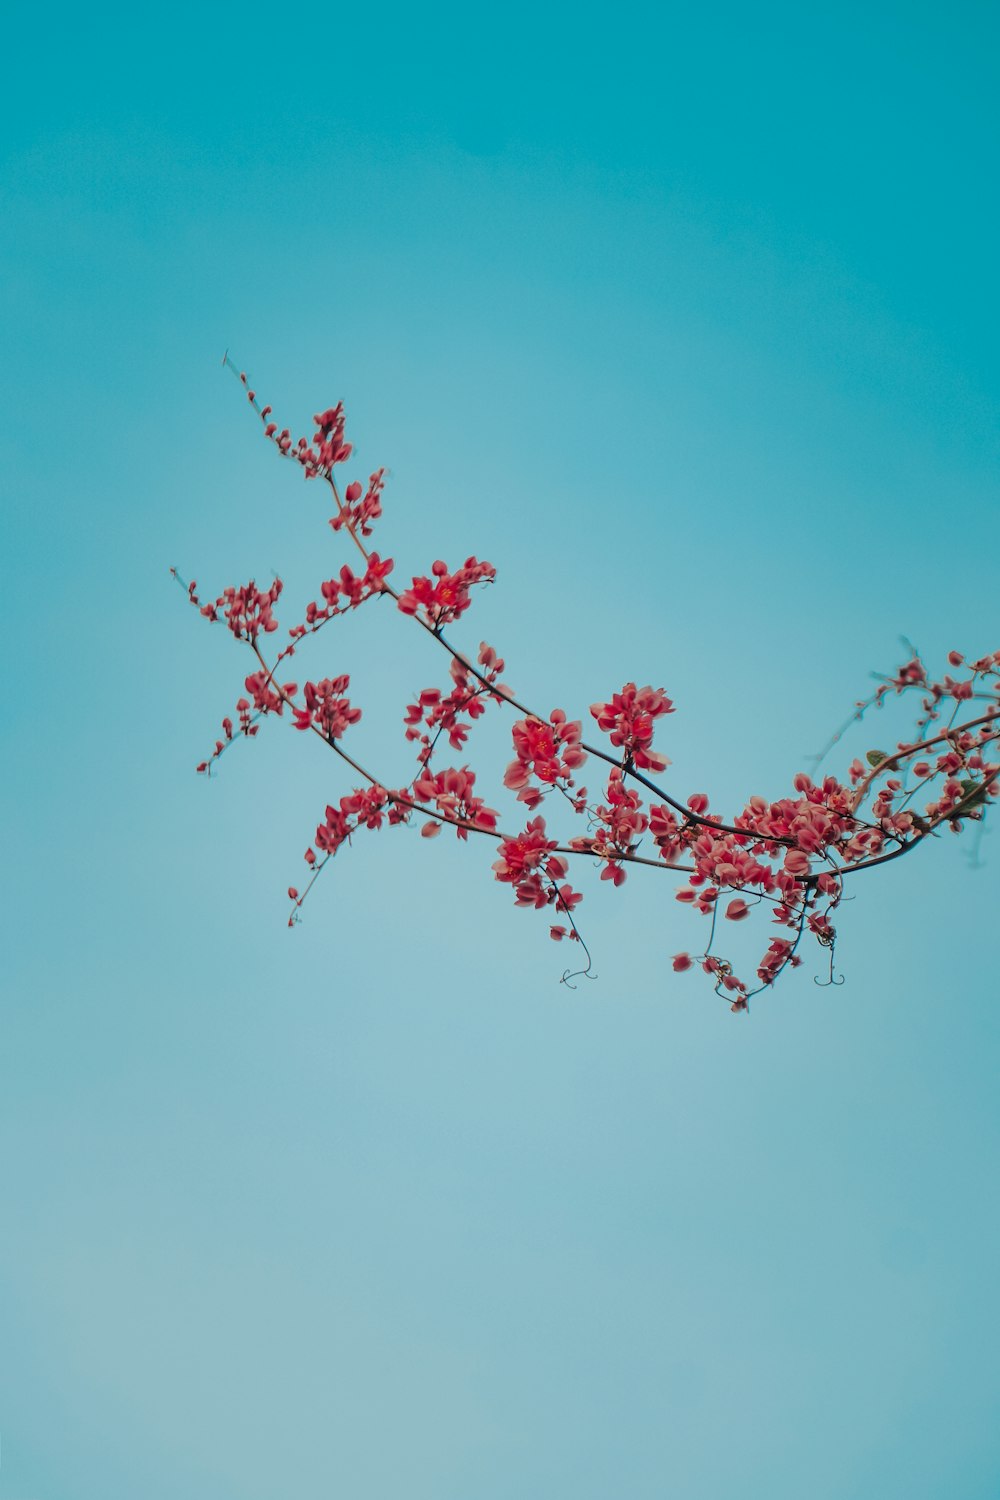 red leaf tree under blue sky during daytime